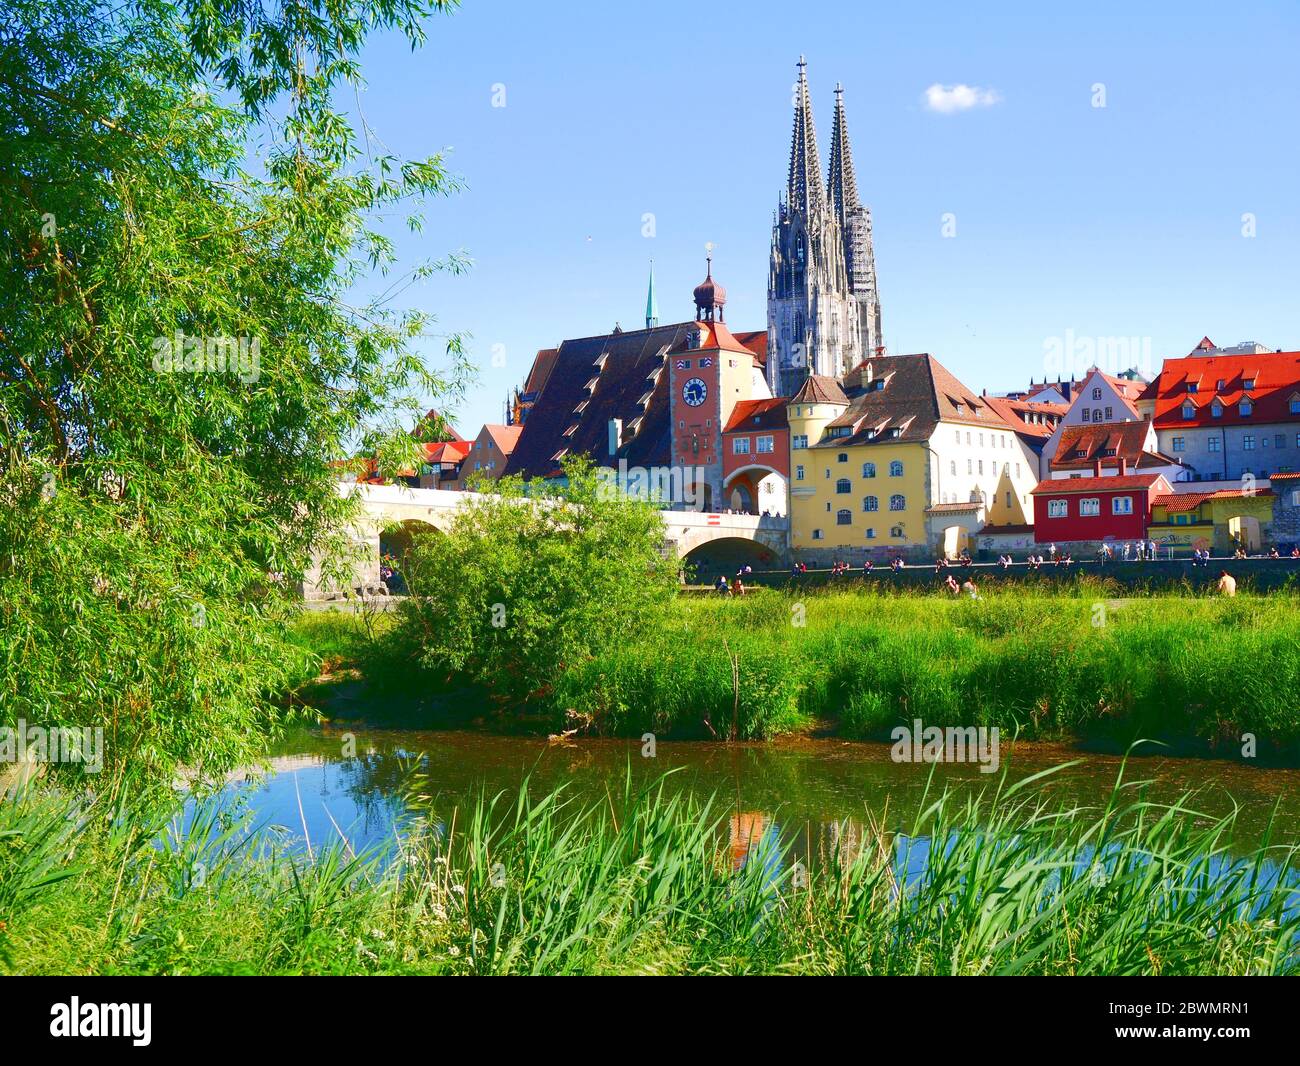 Regensburg, Alemania: Ver el símbolo de la ciudad Foto de stock